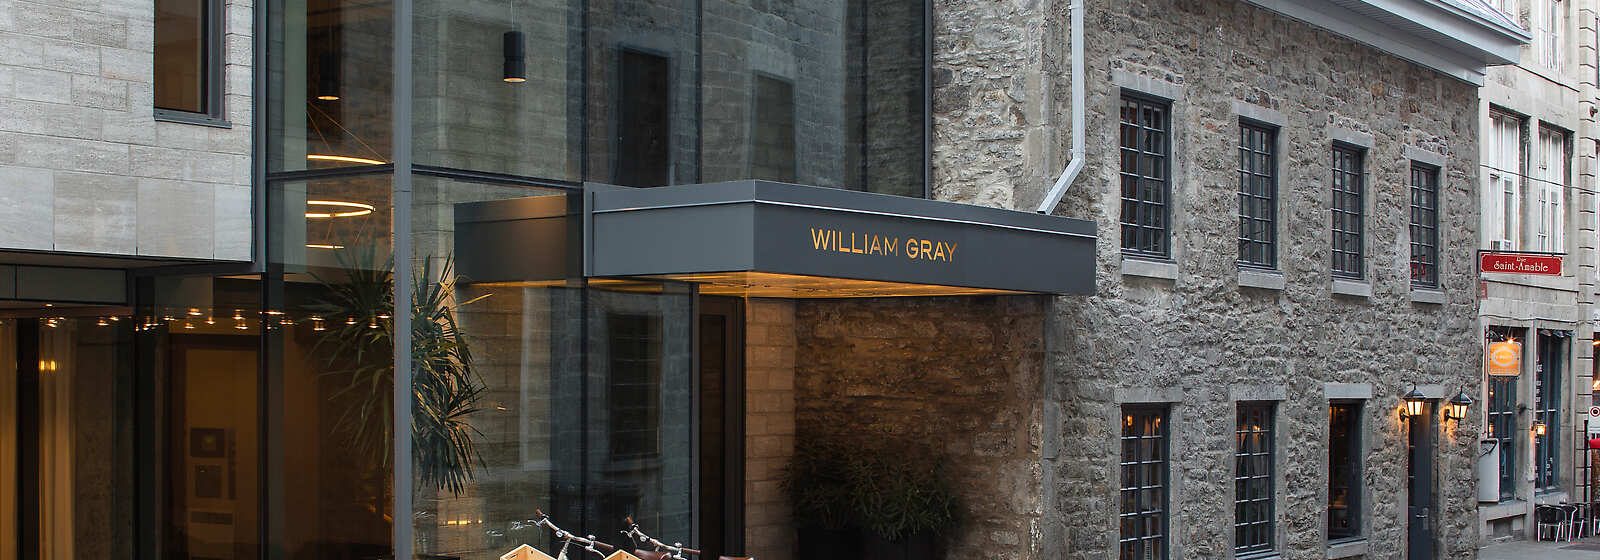 Hôtel William Gray Facade